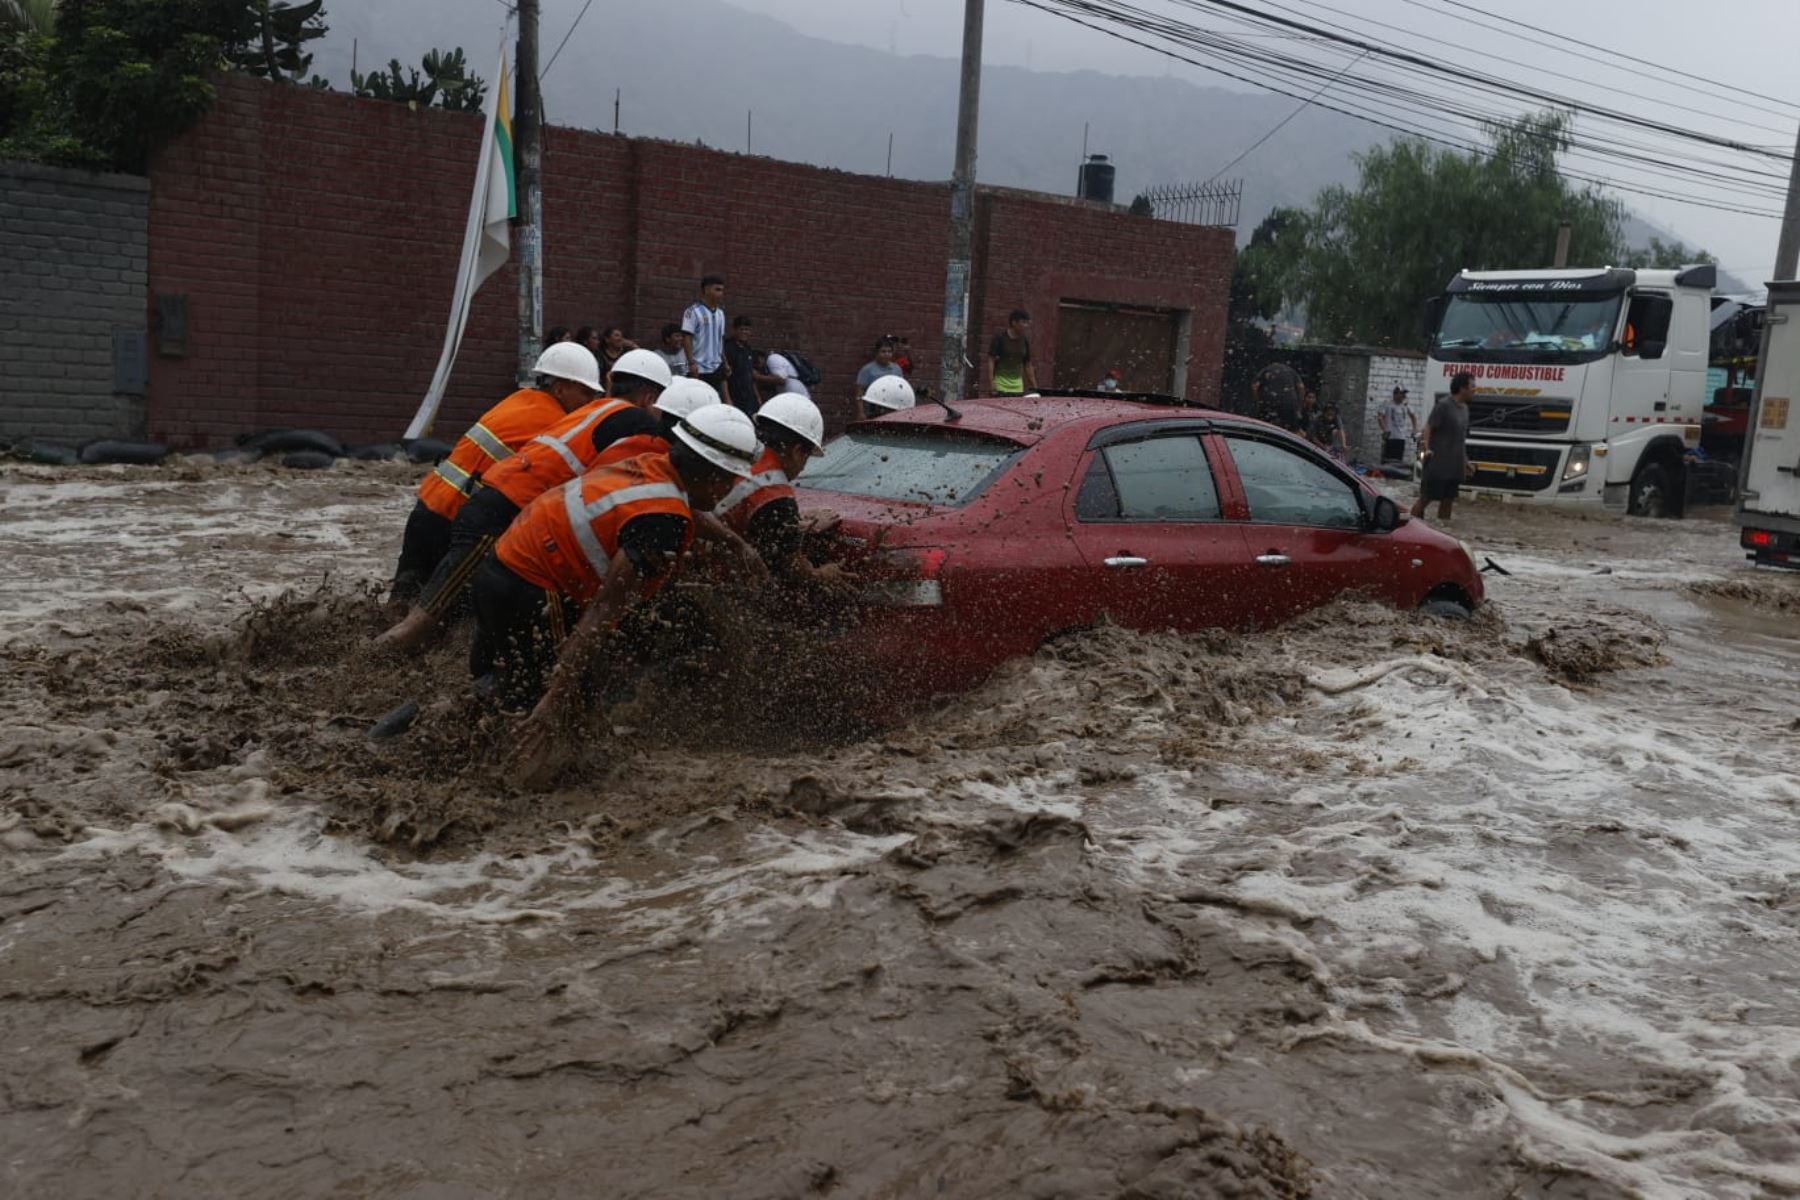 La Carretera Central luce esta tarde completamente inundada en el distrito de Chaclacayo, debido a la activación de la quebrada Los Laureles por las intensas lluvias que se registraron en las últimas horas. Foto: ANDINA/Vidal Tarqui